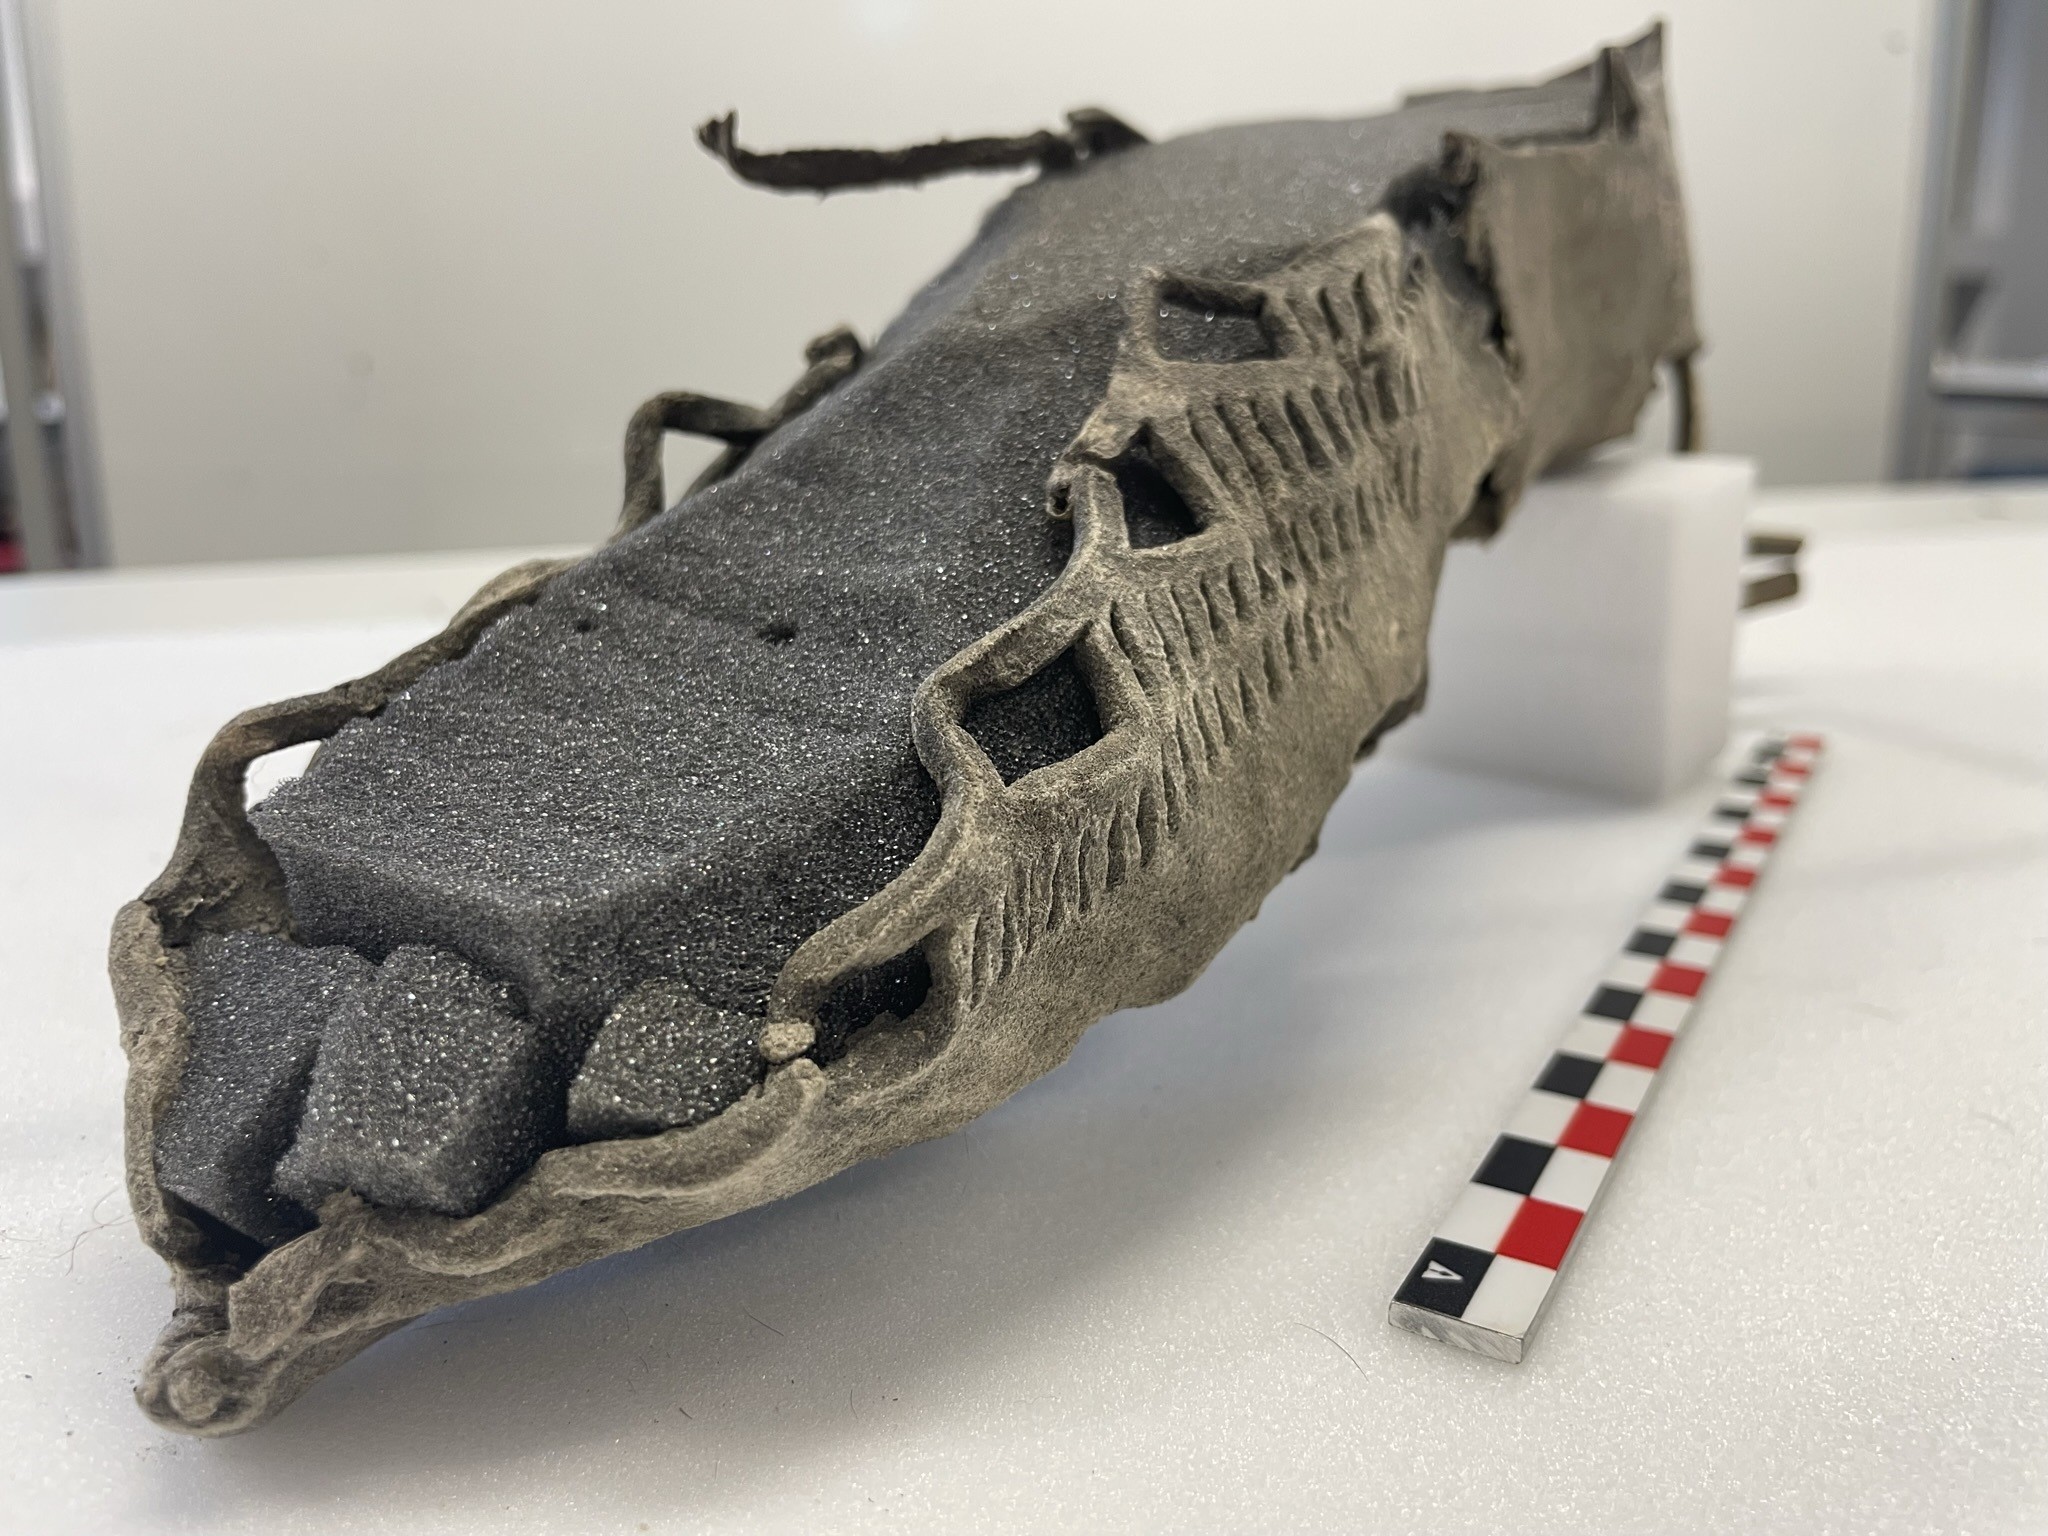 Calçado da Idade do Ferro datado de 4 a.C. encontrado na Noruega  (Foto: @brearkeologi/Reprodução)